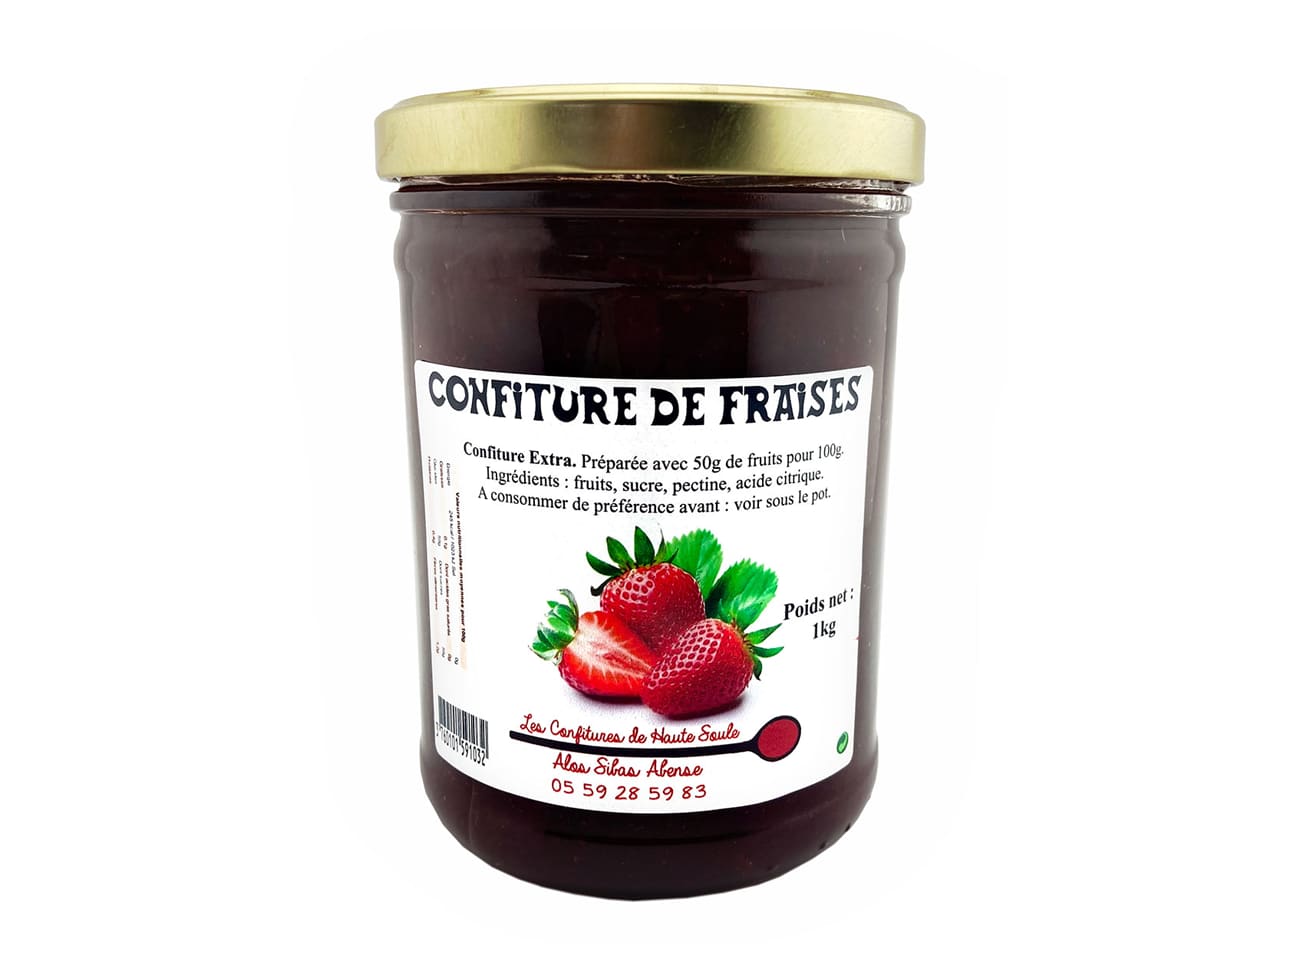 Confiture de fraise - 1 kg - Confitures de Haute Soule - Meilleur